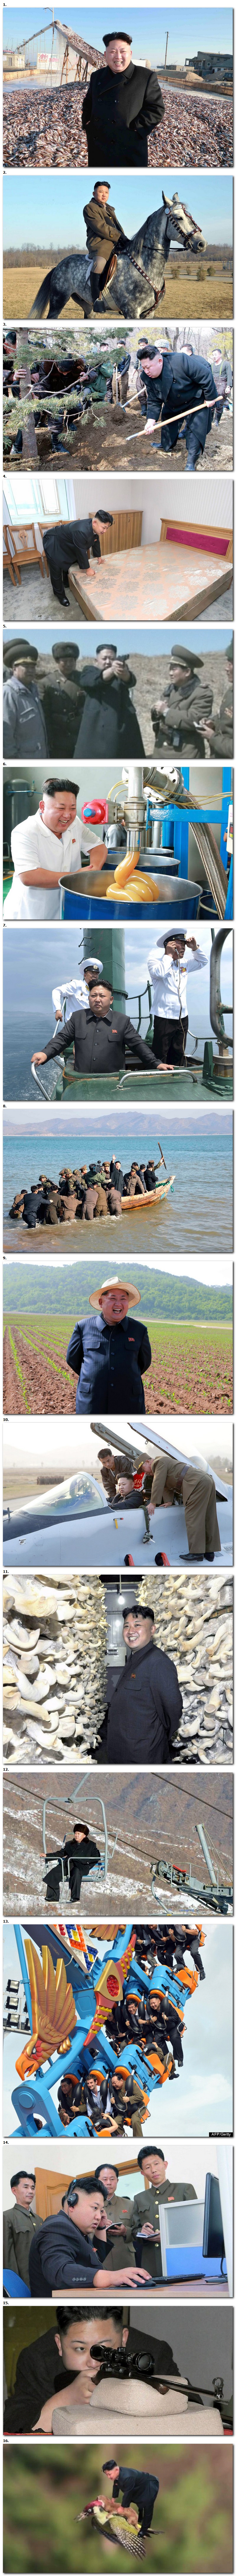 Les mille et une vies de Kim Jong-Un